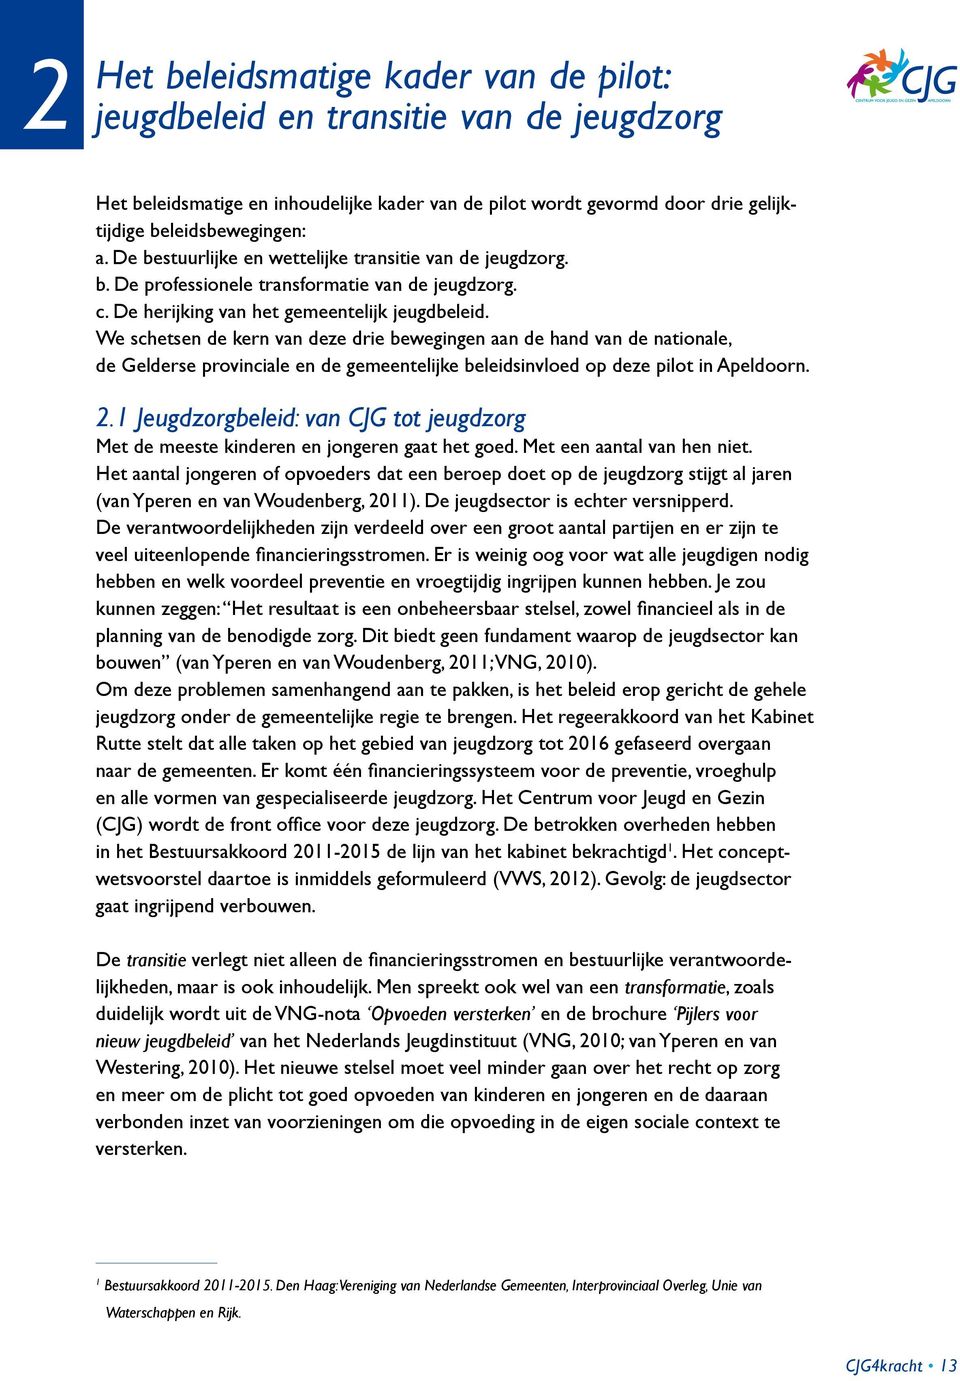 We schetsen de kern van deze drie bewegingen aan de hand van de nationale, de Gelderse provinciale en de gemeentelijke beleidsinvloed op deze pilot in Apeldoorn. 2.